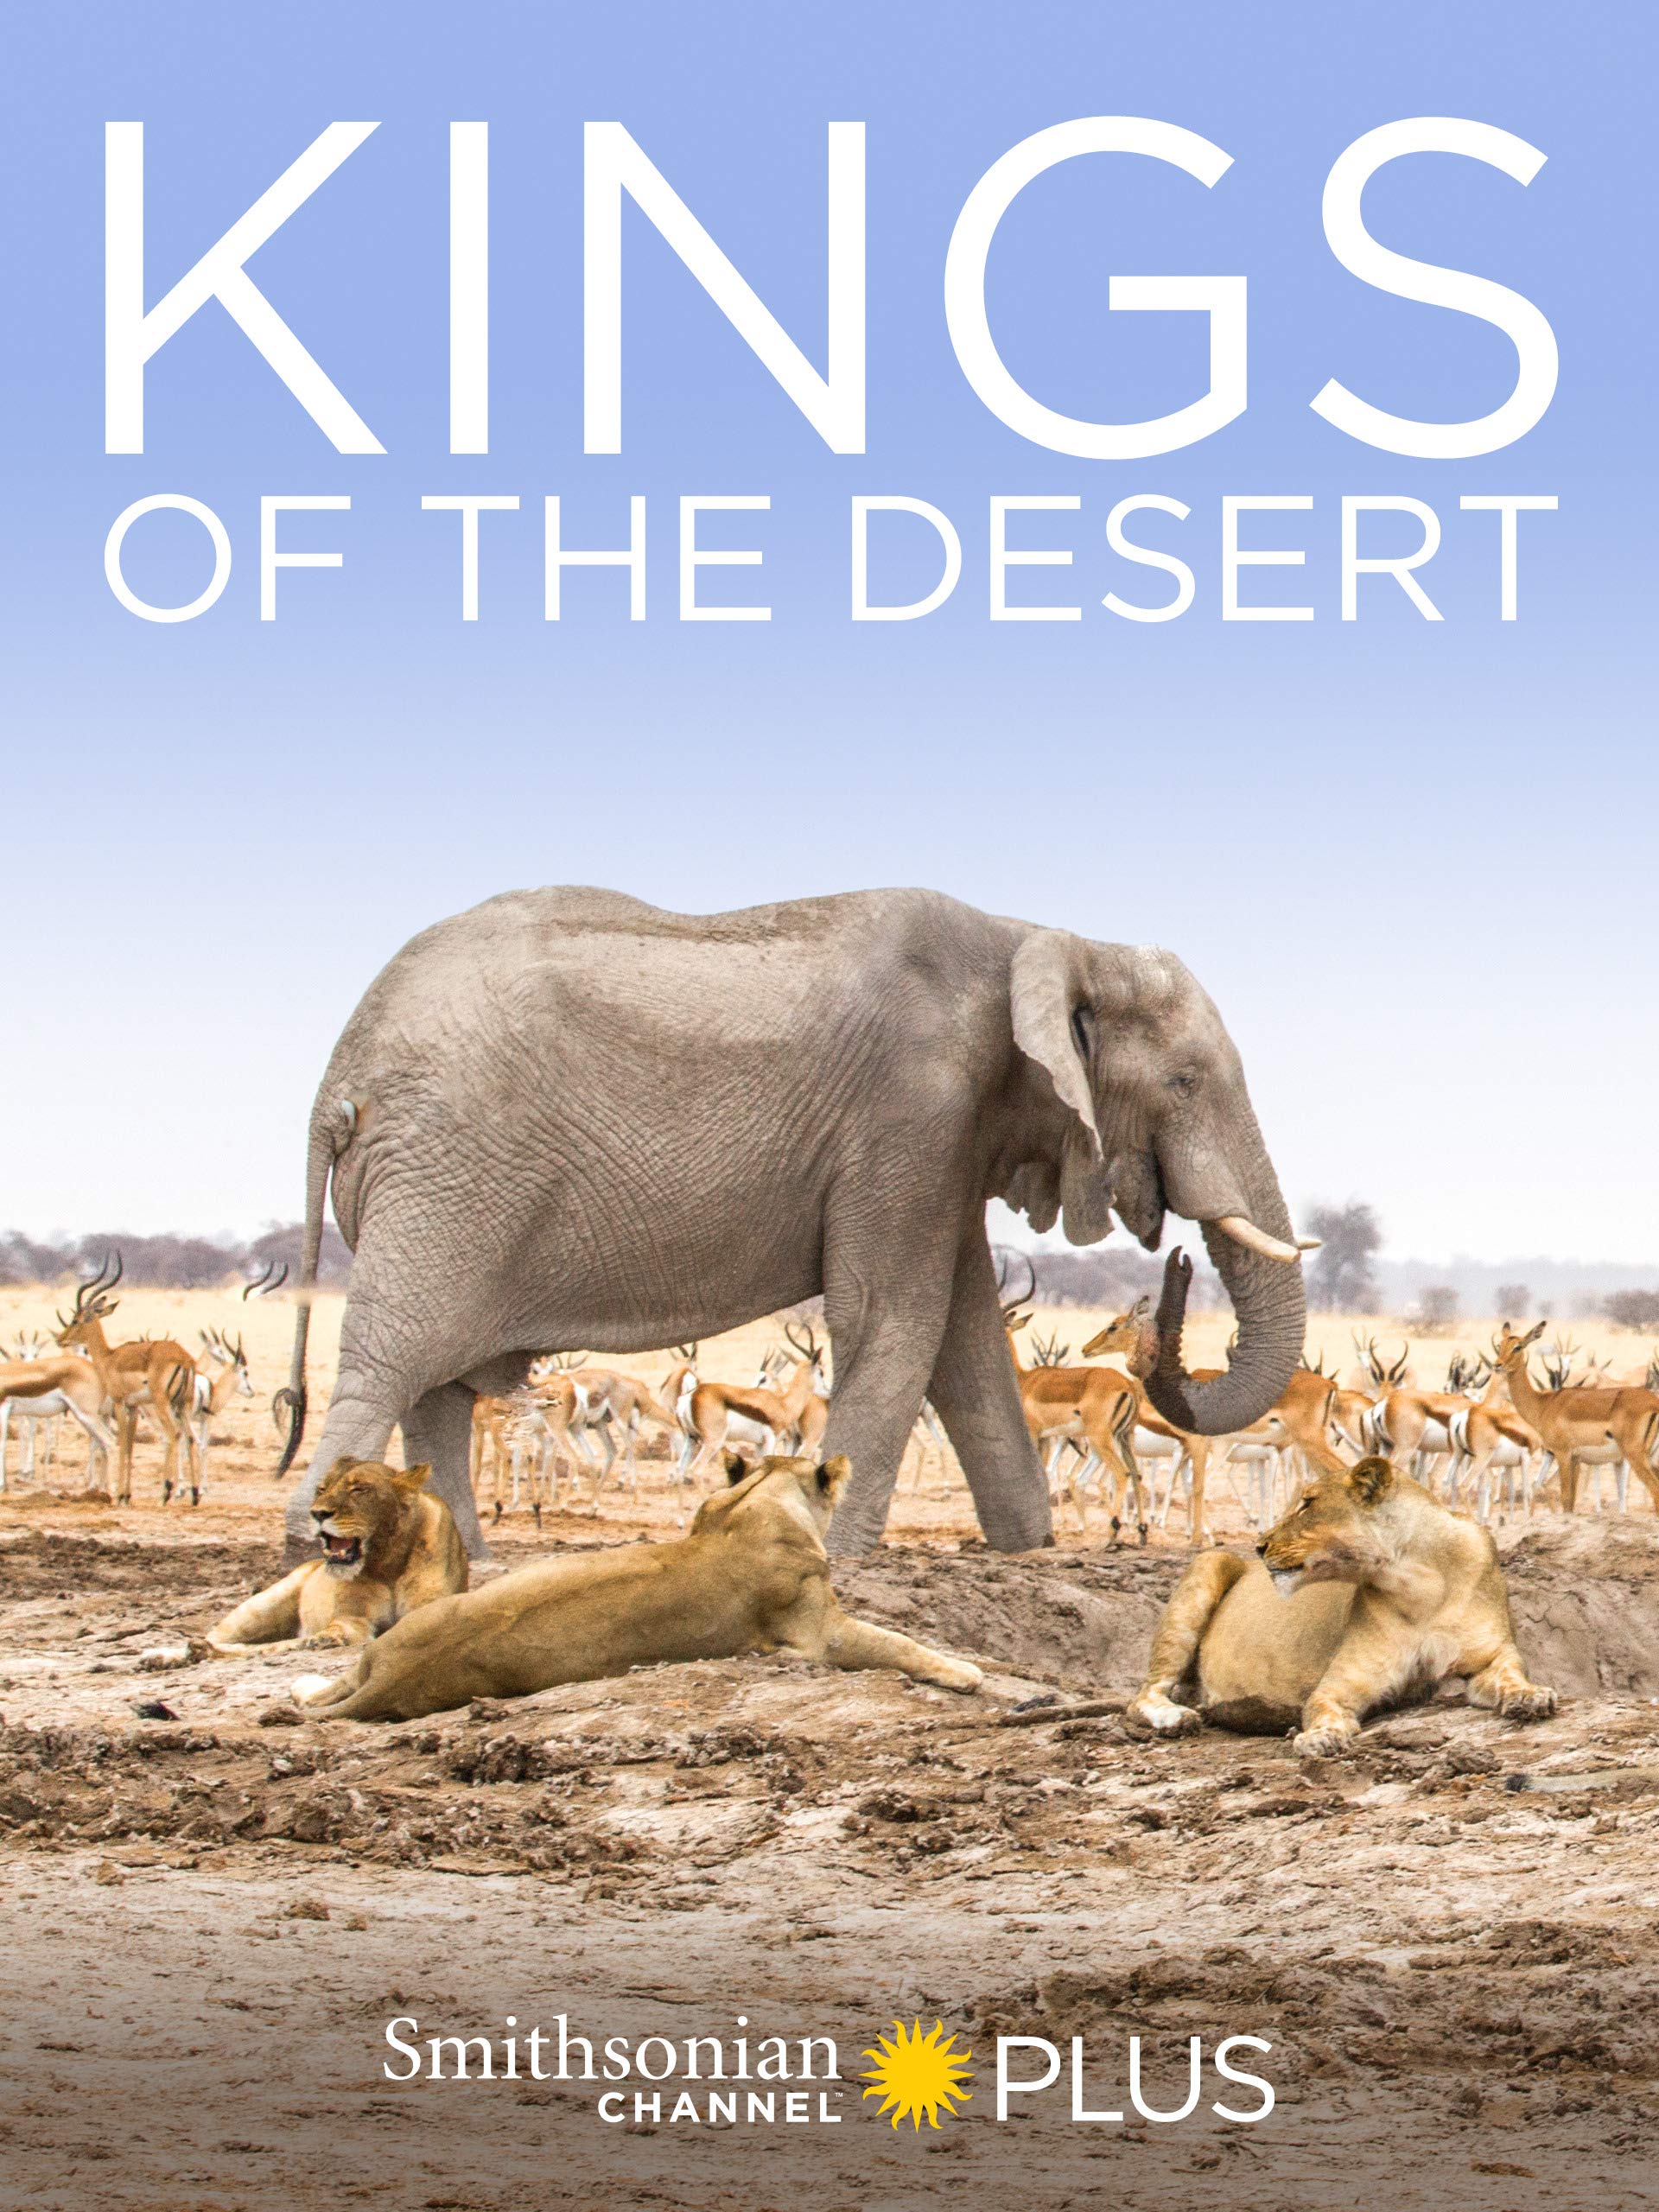 King of the Desert Lions